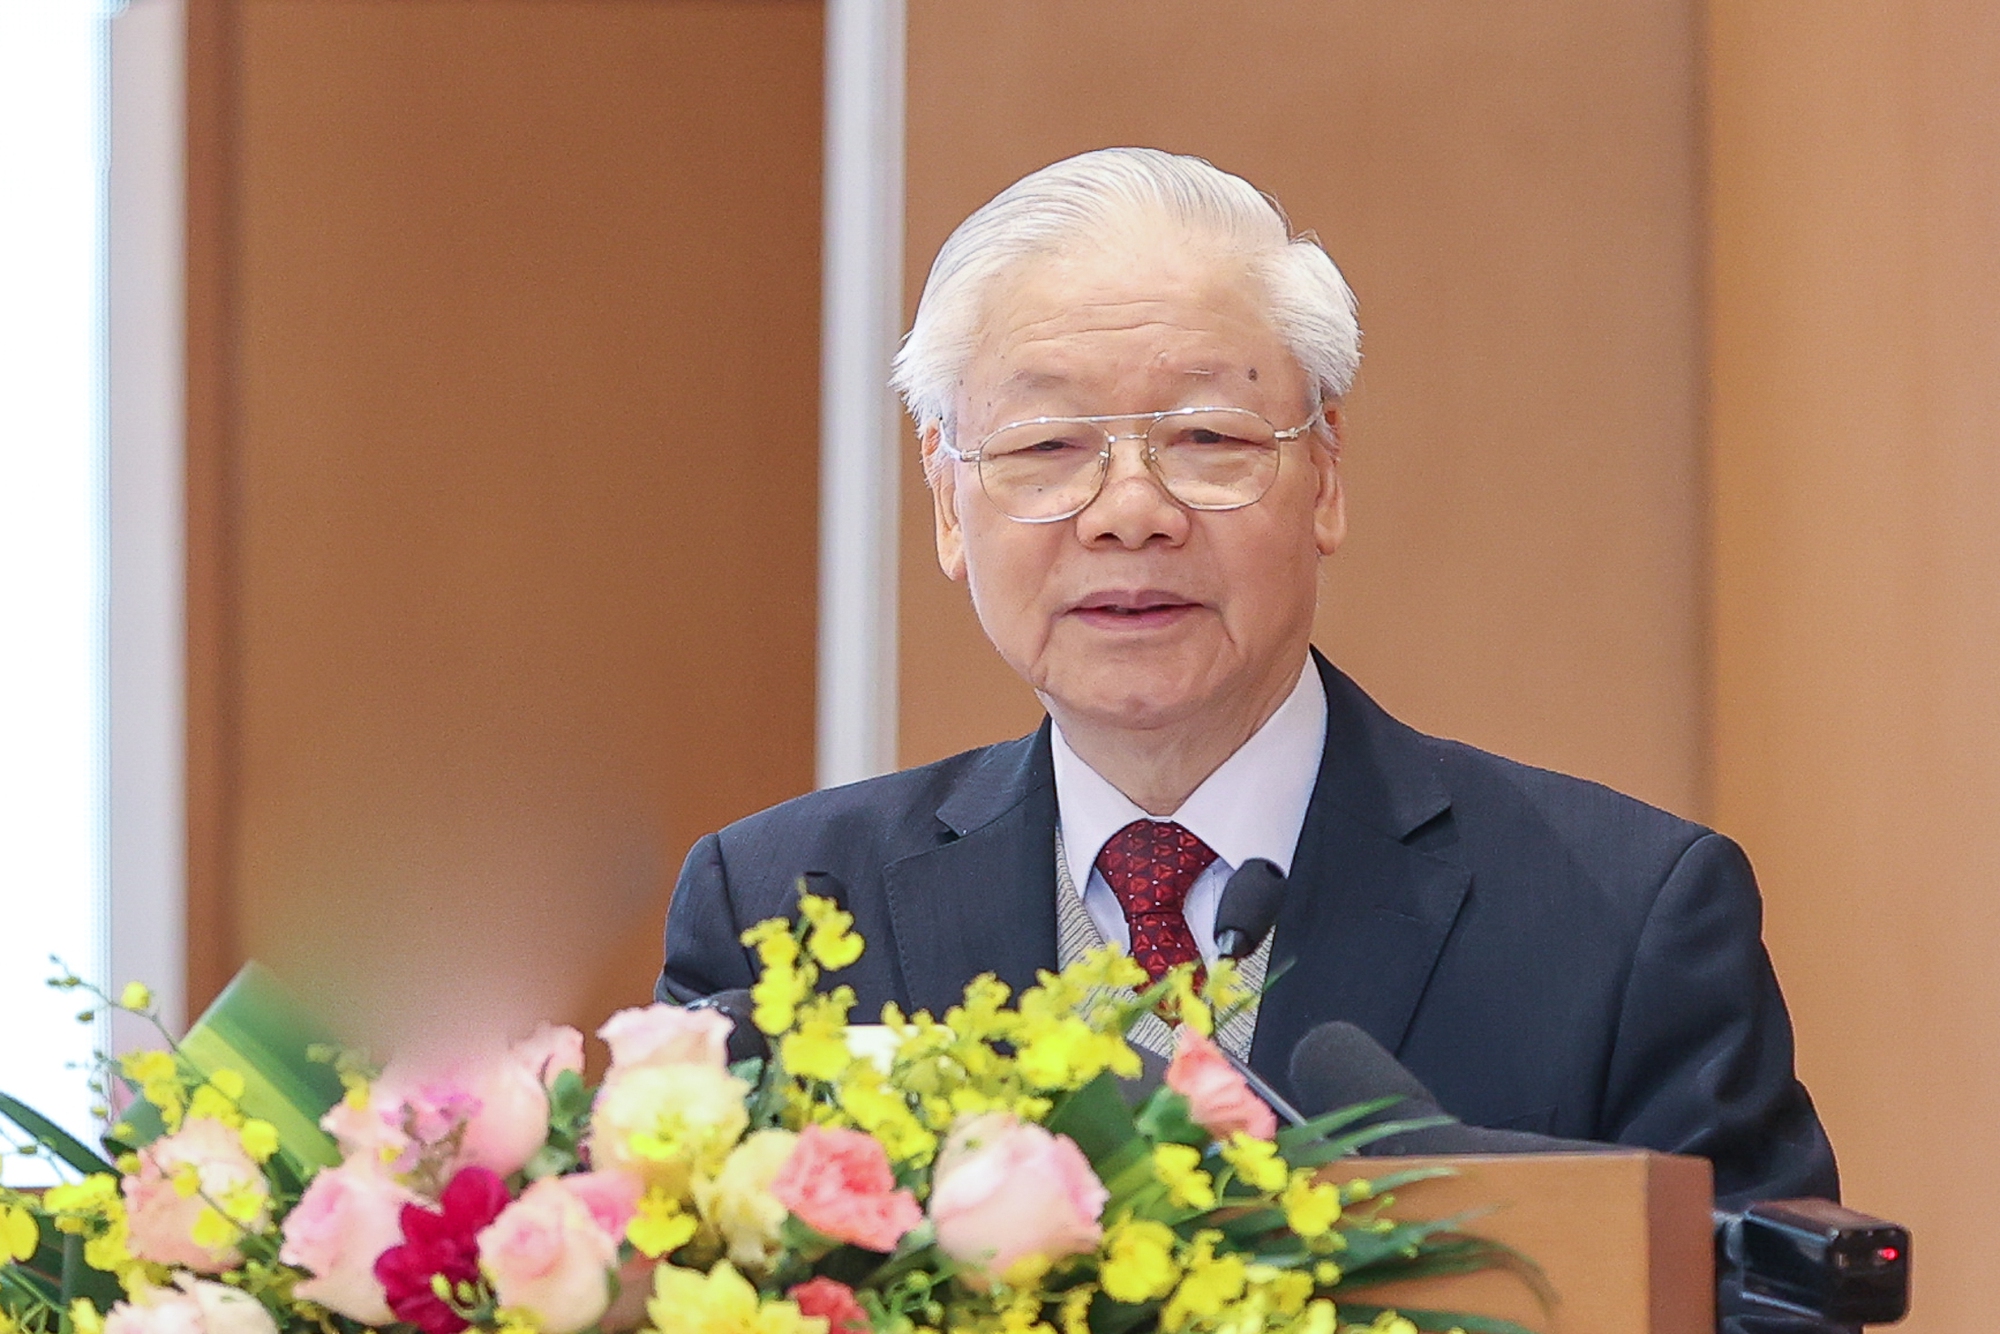 Bài viết của Tổng bí thư Nguyễn Phú Trọng nhân kỷ niệm 94 năm thành lập Đảng